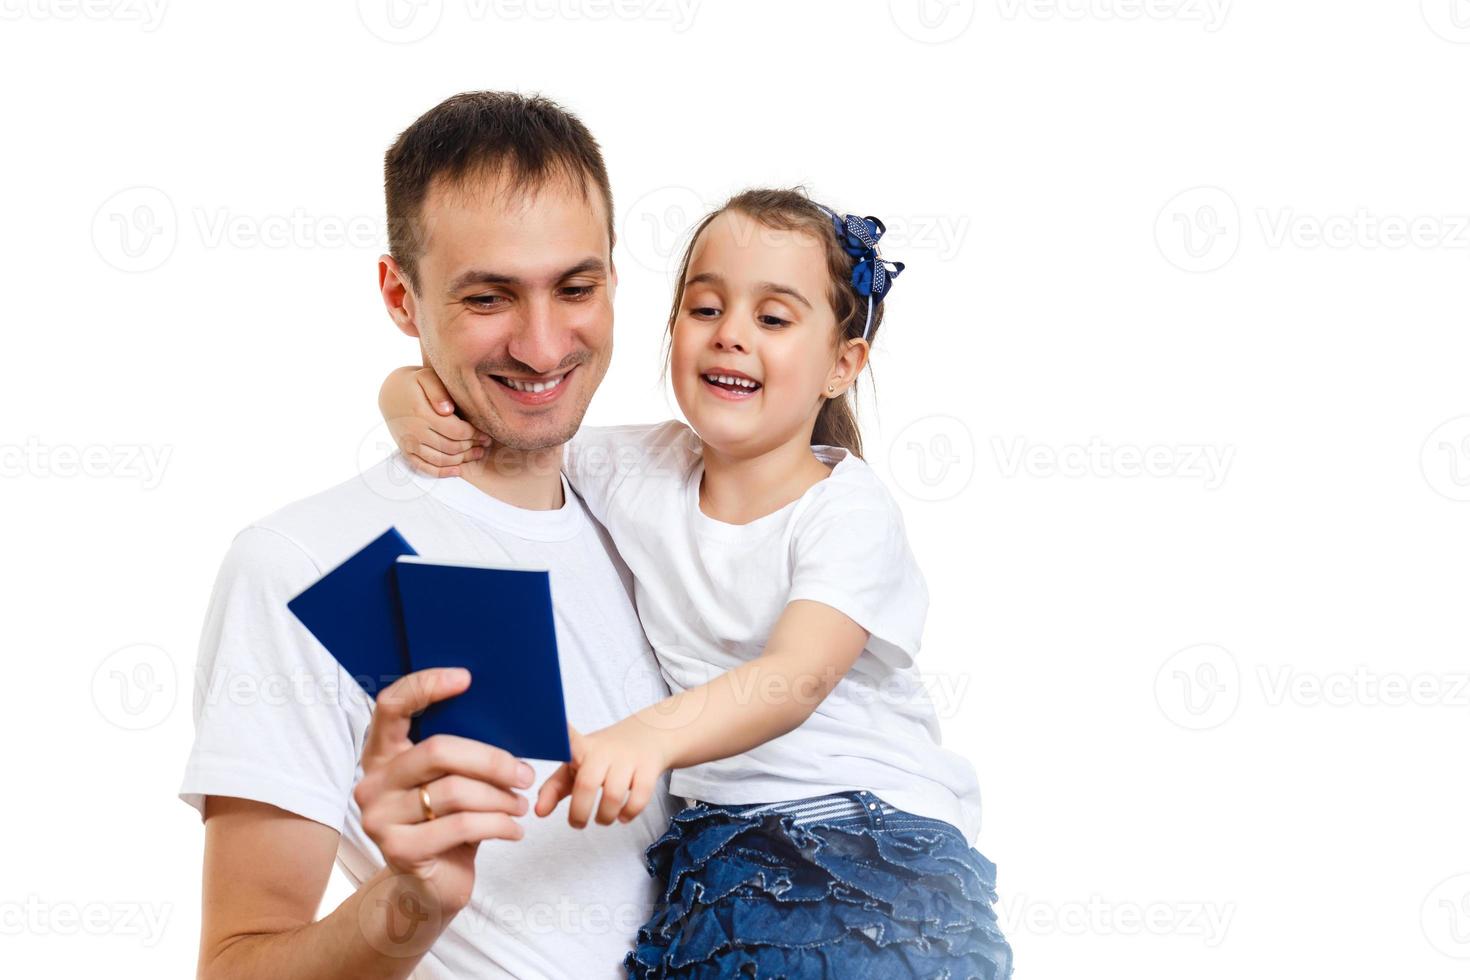 Reisekonzept Studioporträt eines hübschen jungen Vaters mit erhobenen Händen, der einen Reisepass mit Tickets hält foto